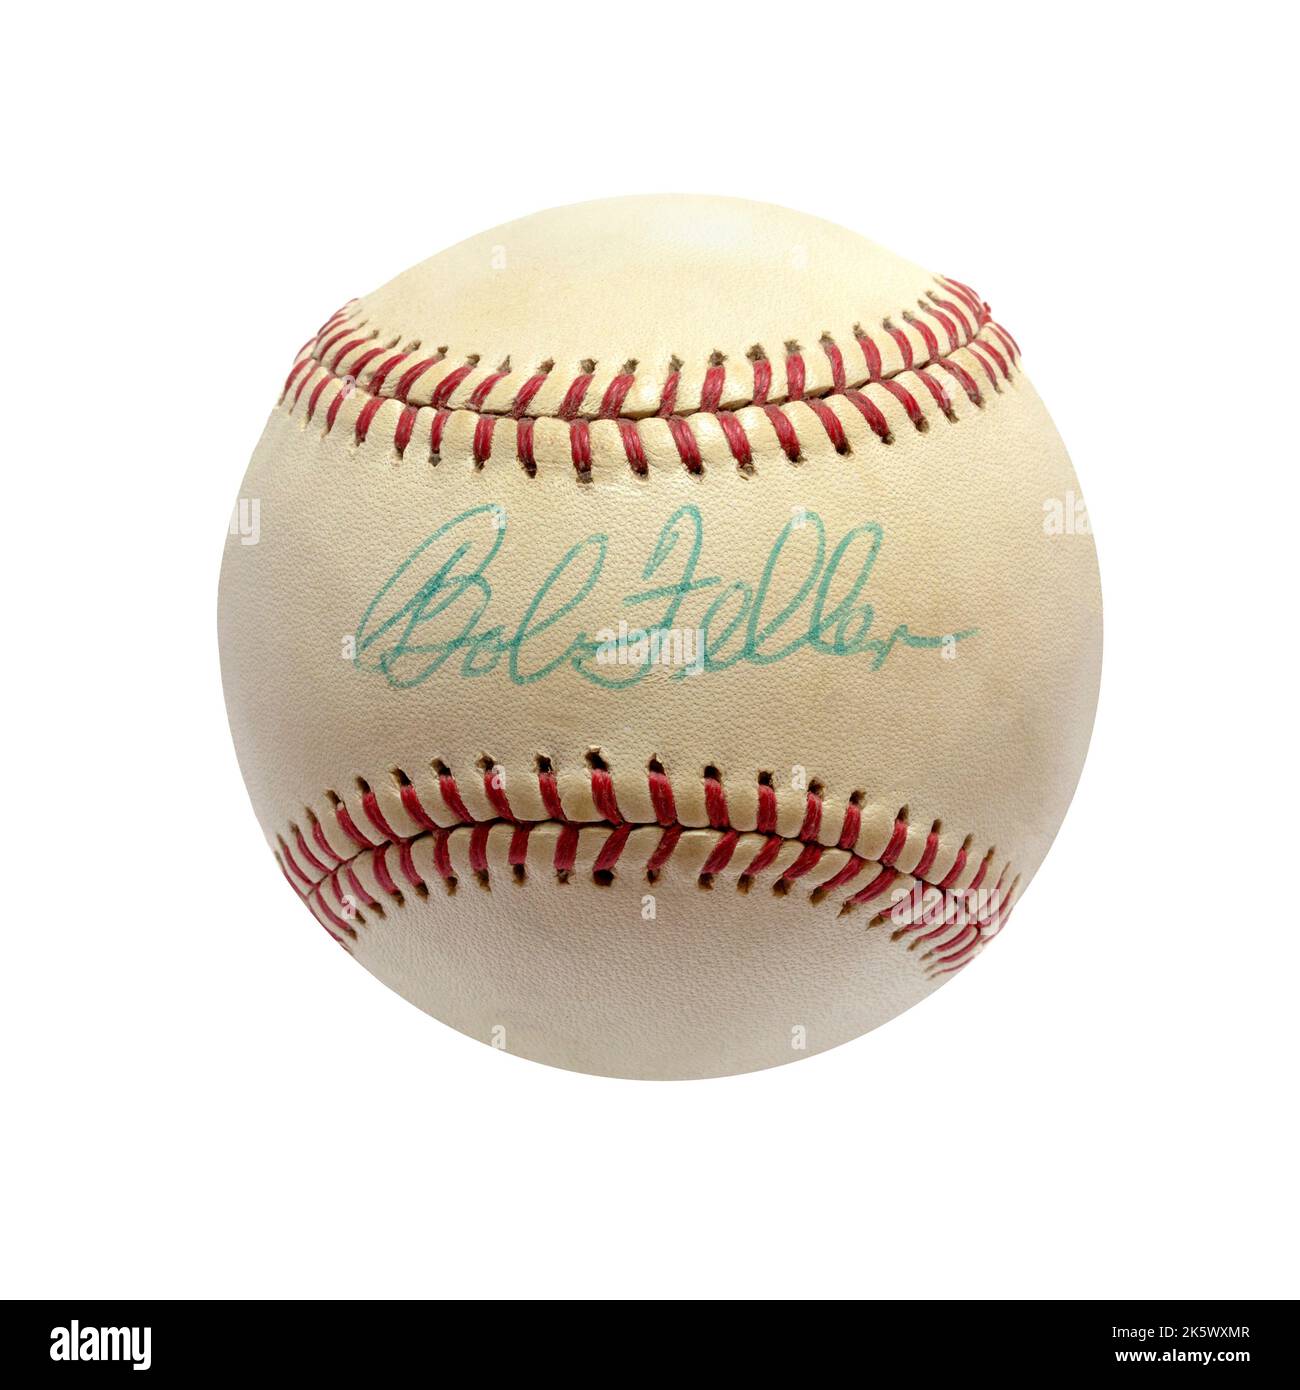 Un baseball autographié historique signé par le lanceur Bob Feller du Temple de la renommée des Cleveland Indians Banque D'Images